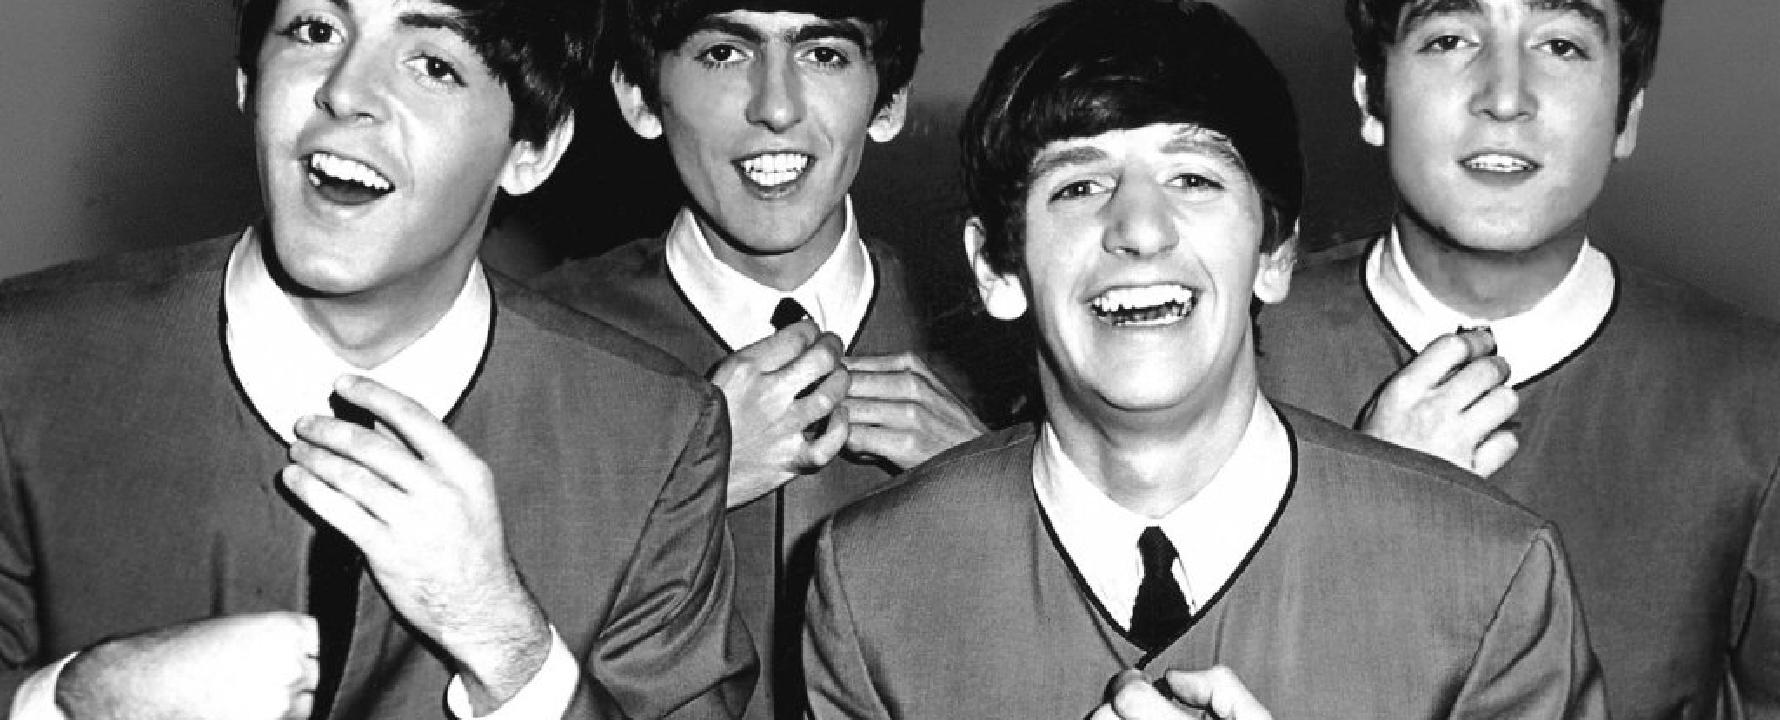 Fotografía promocional de The Beatles